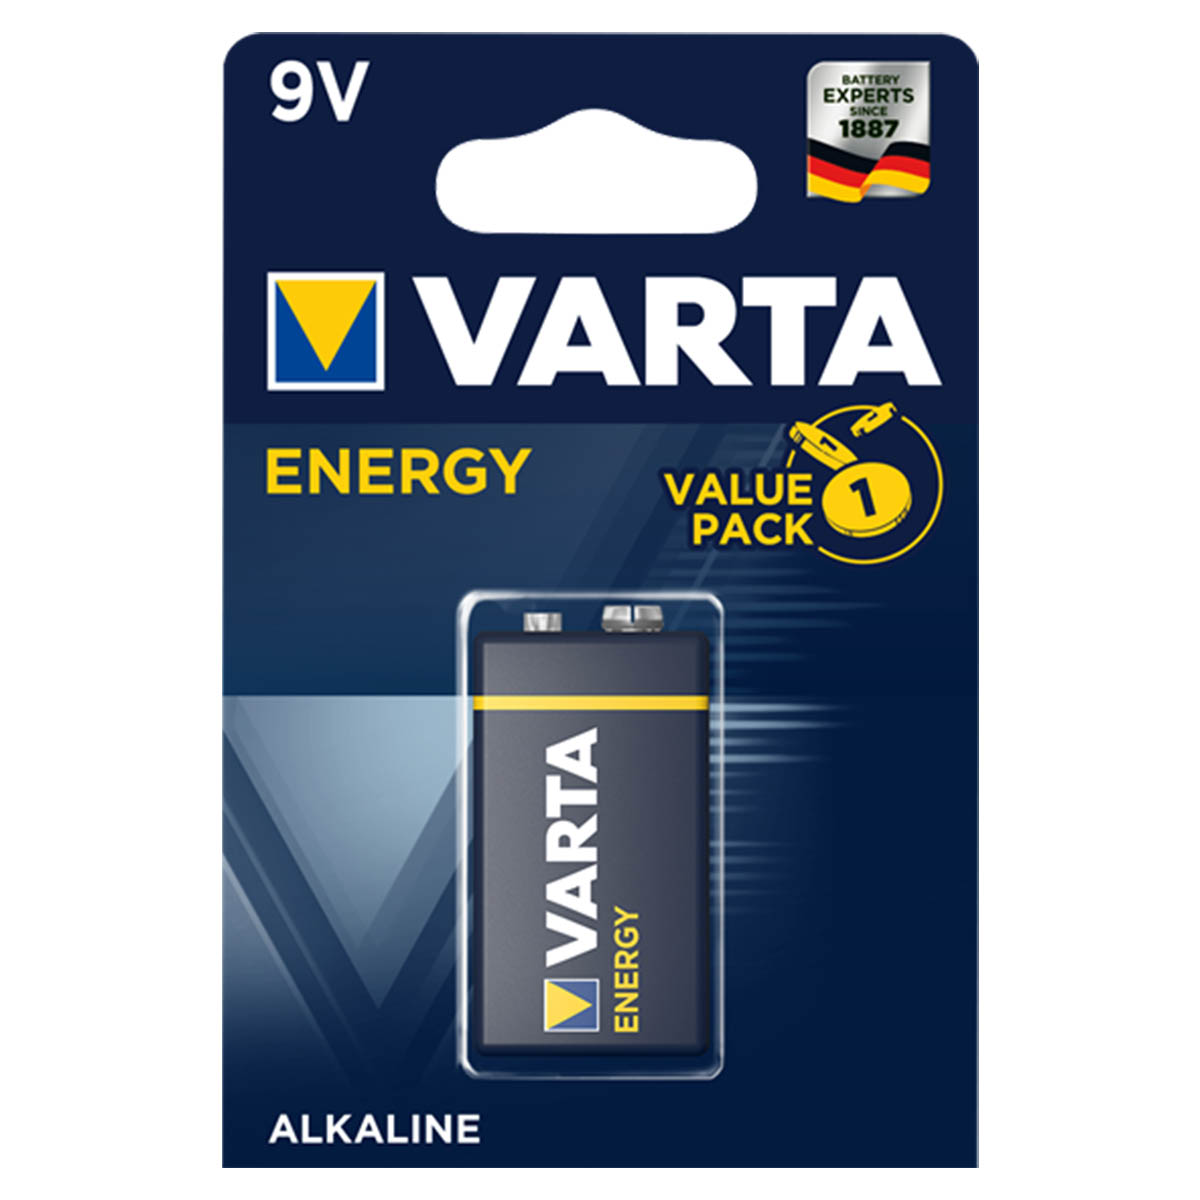 Батарейка VARTA Energy 9V BL-1 6LR61/6LF22 (4122) ALKALINE 9V